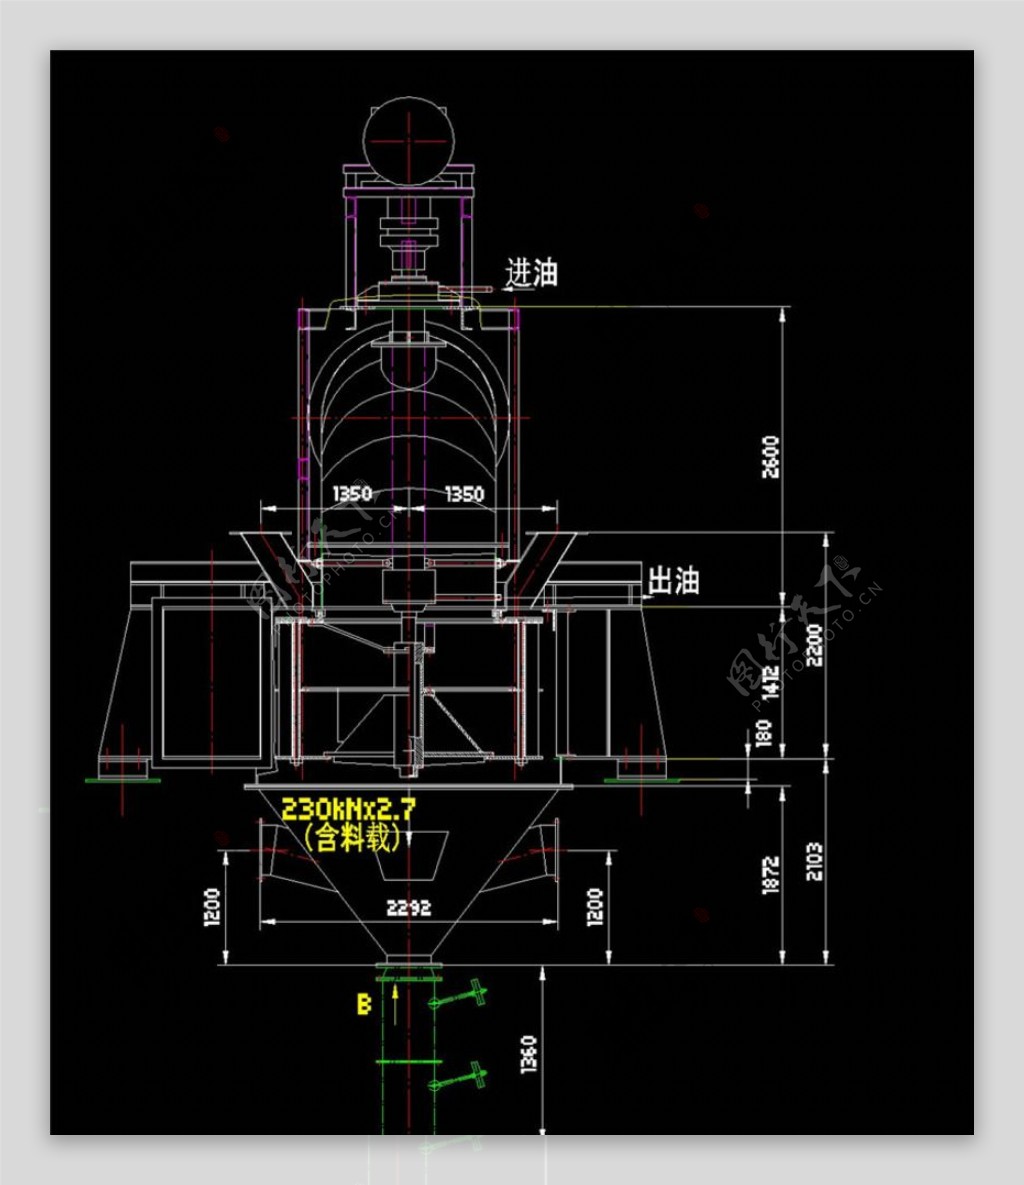 高效水平涡流选粉机CAD机械图